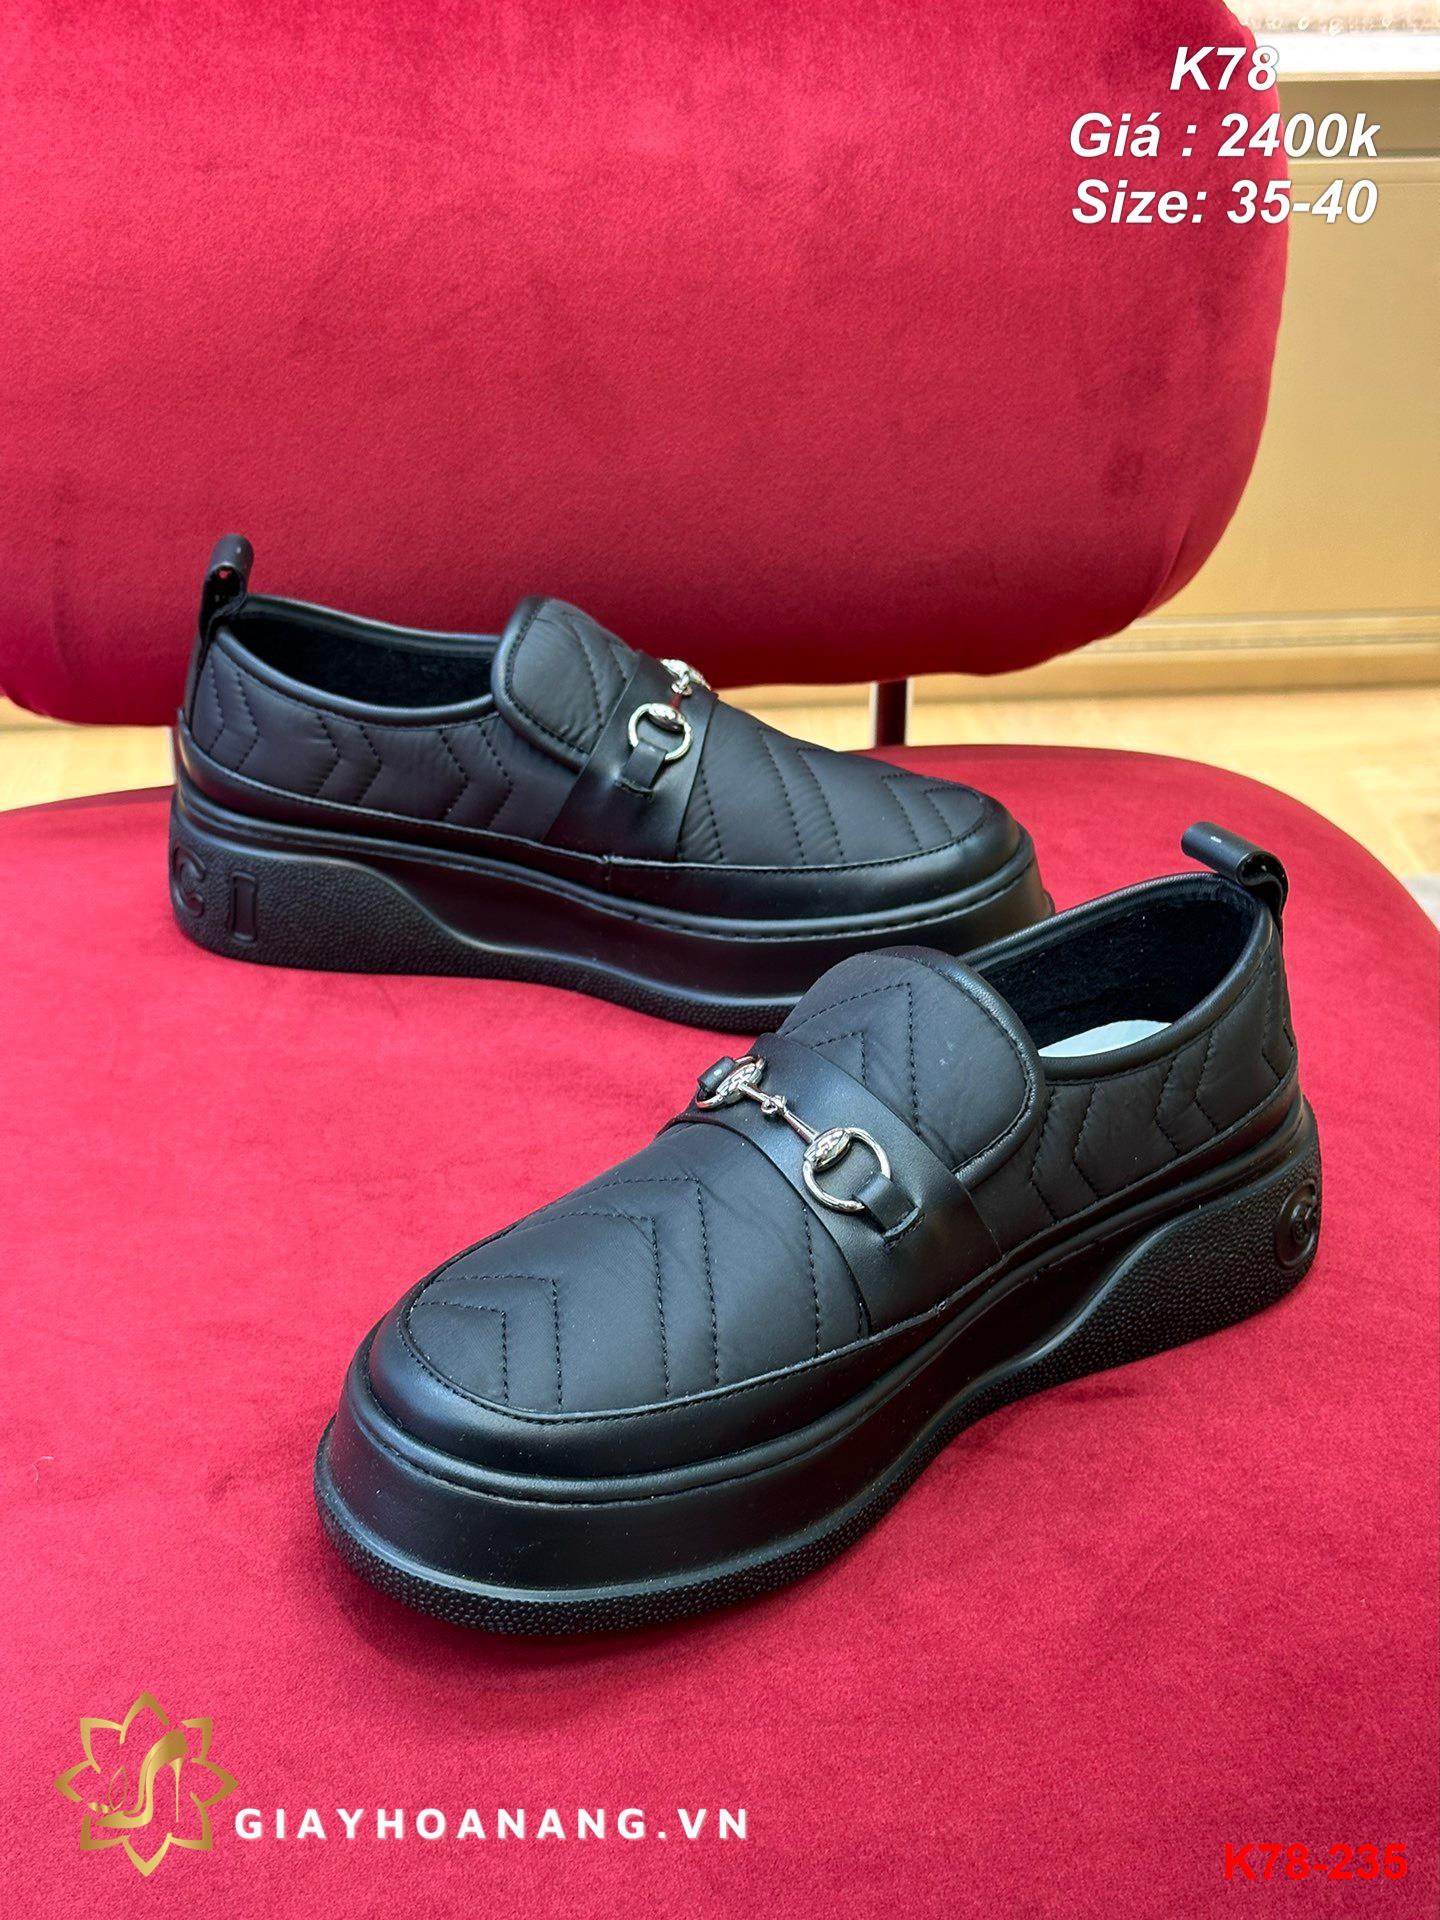 K78-235 Gucci giày lười siêu cấp